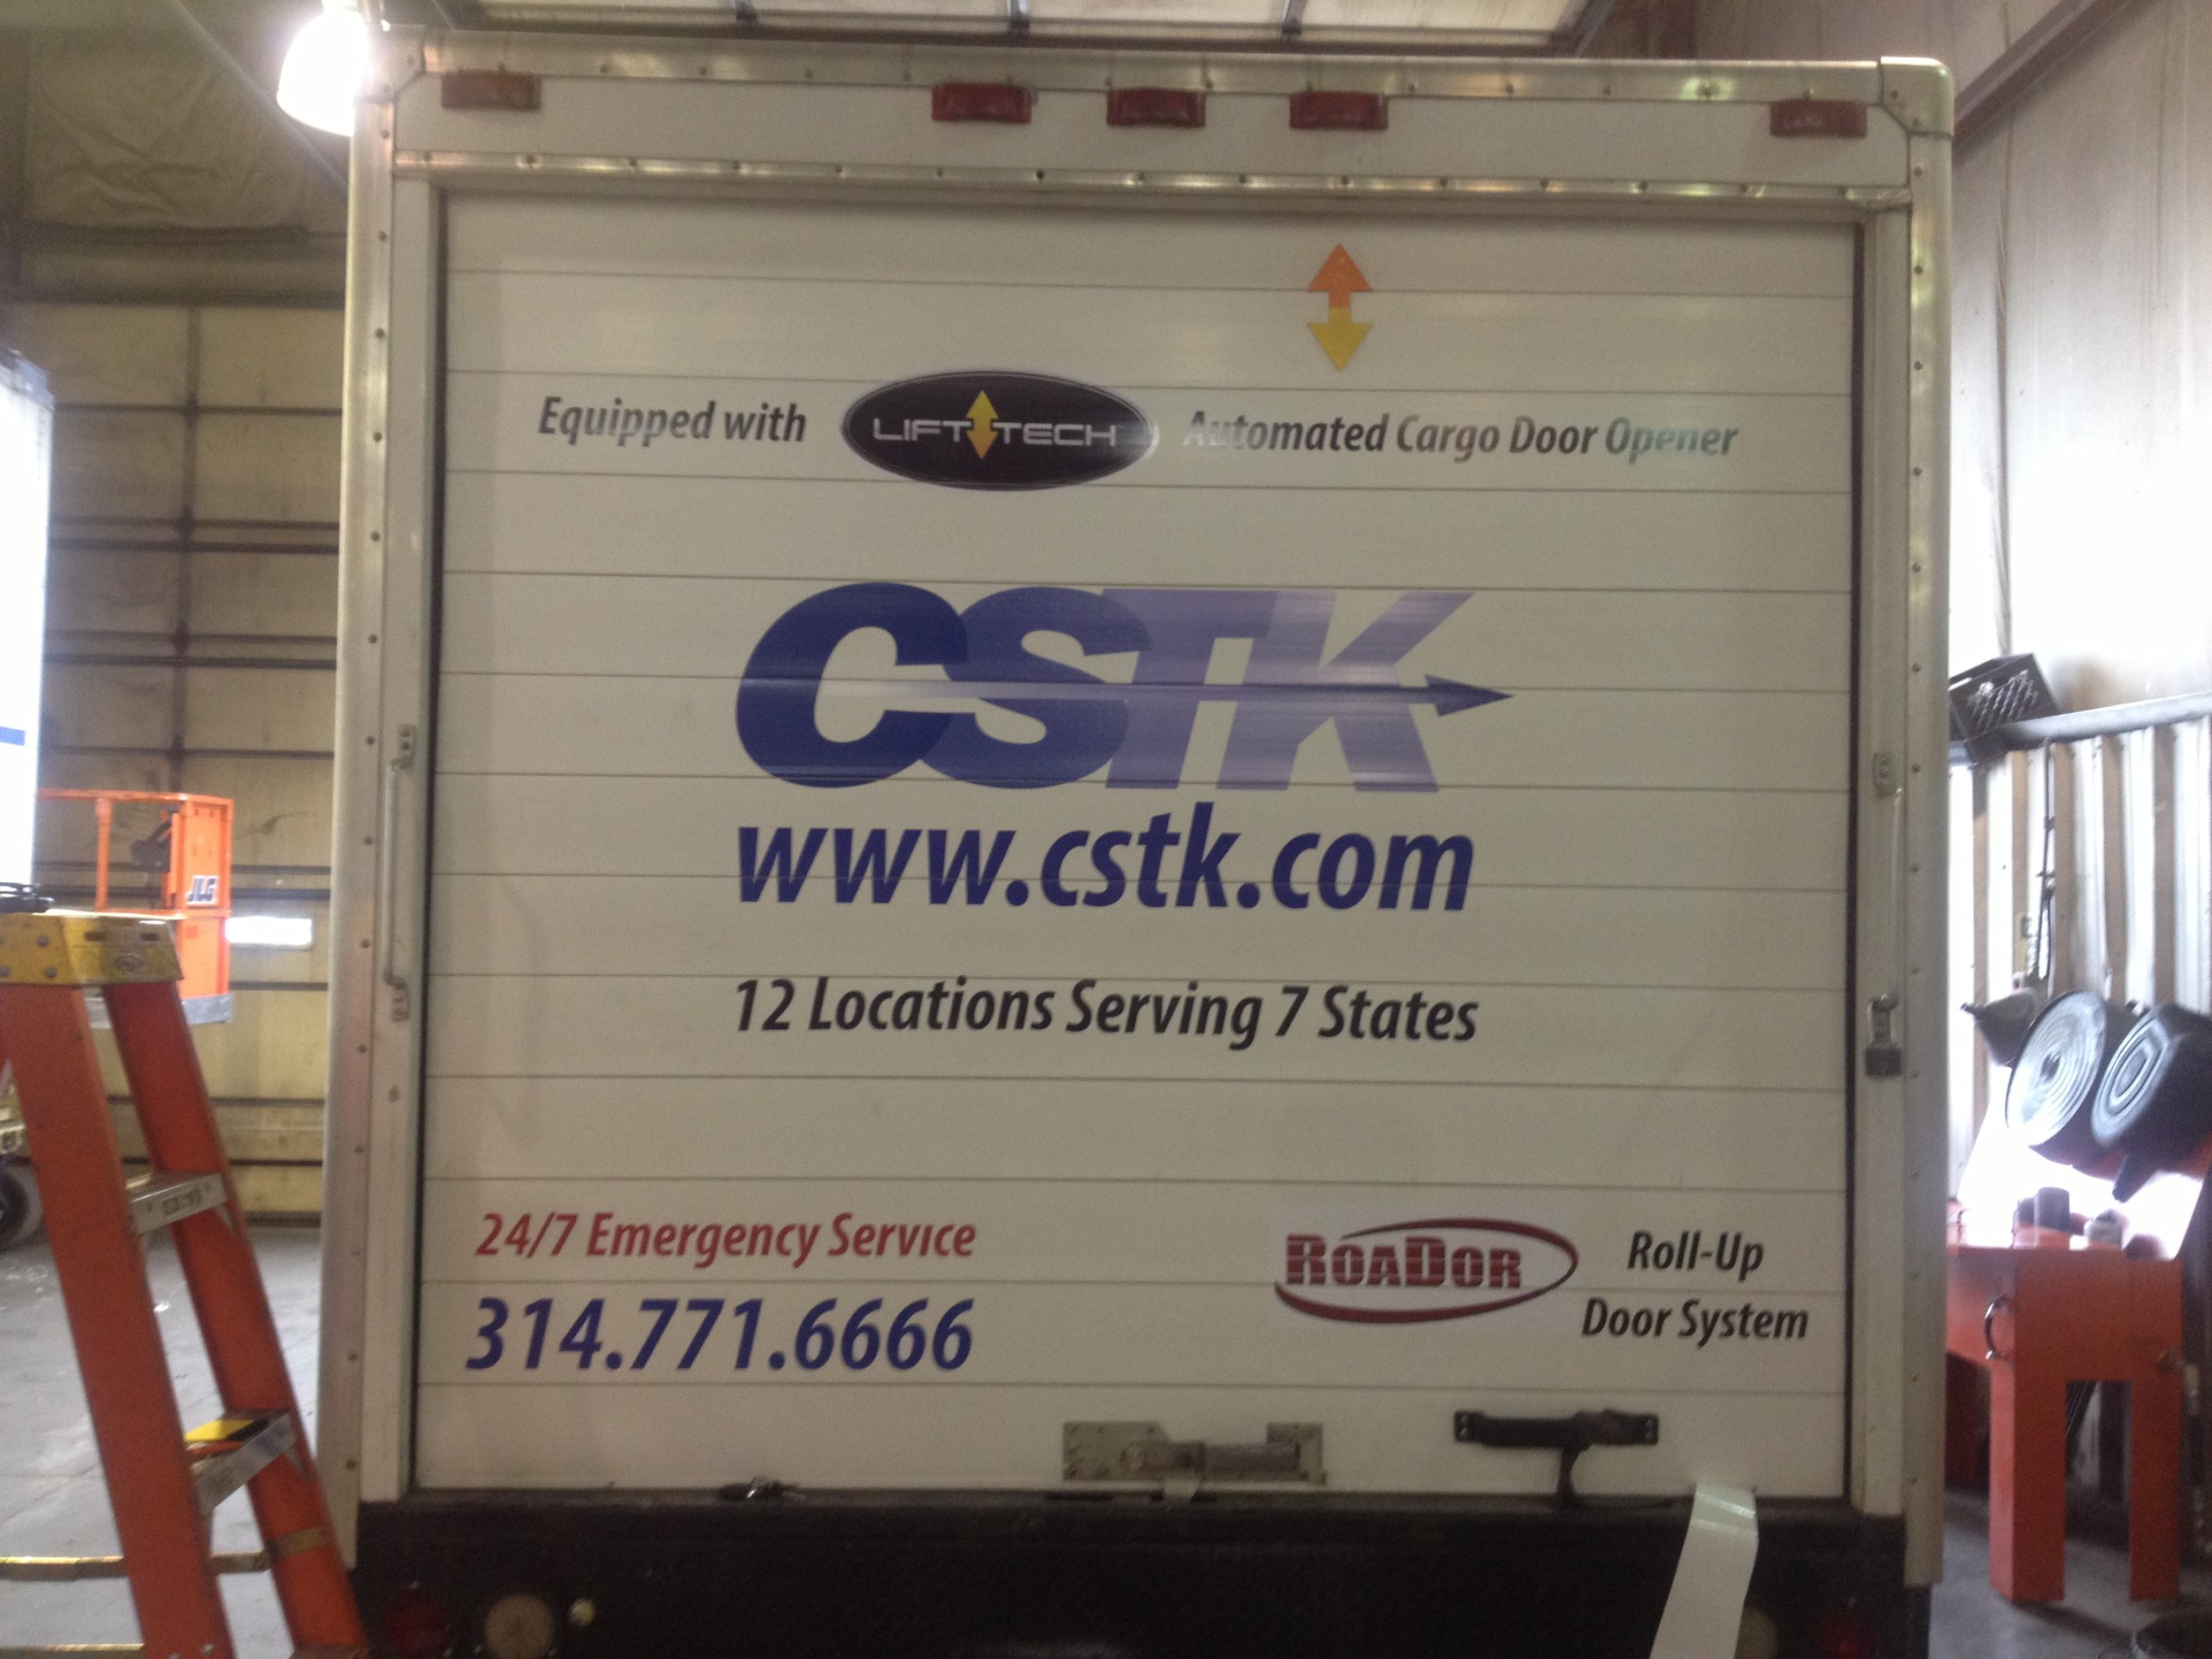 cstk service truck.JPG